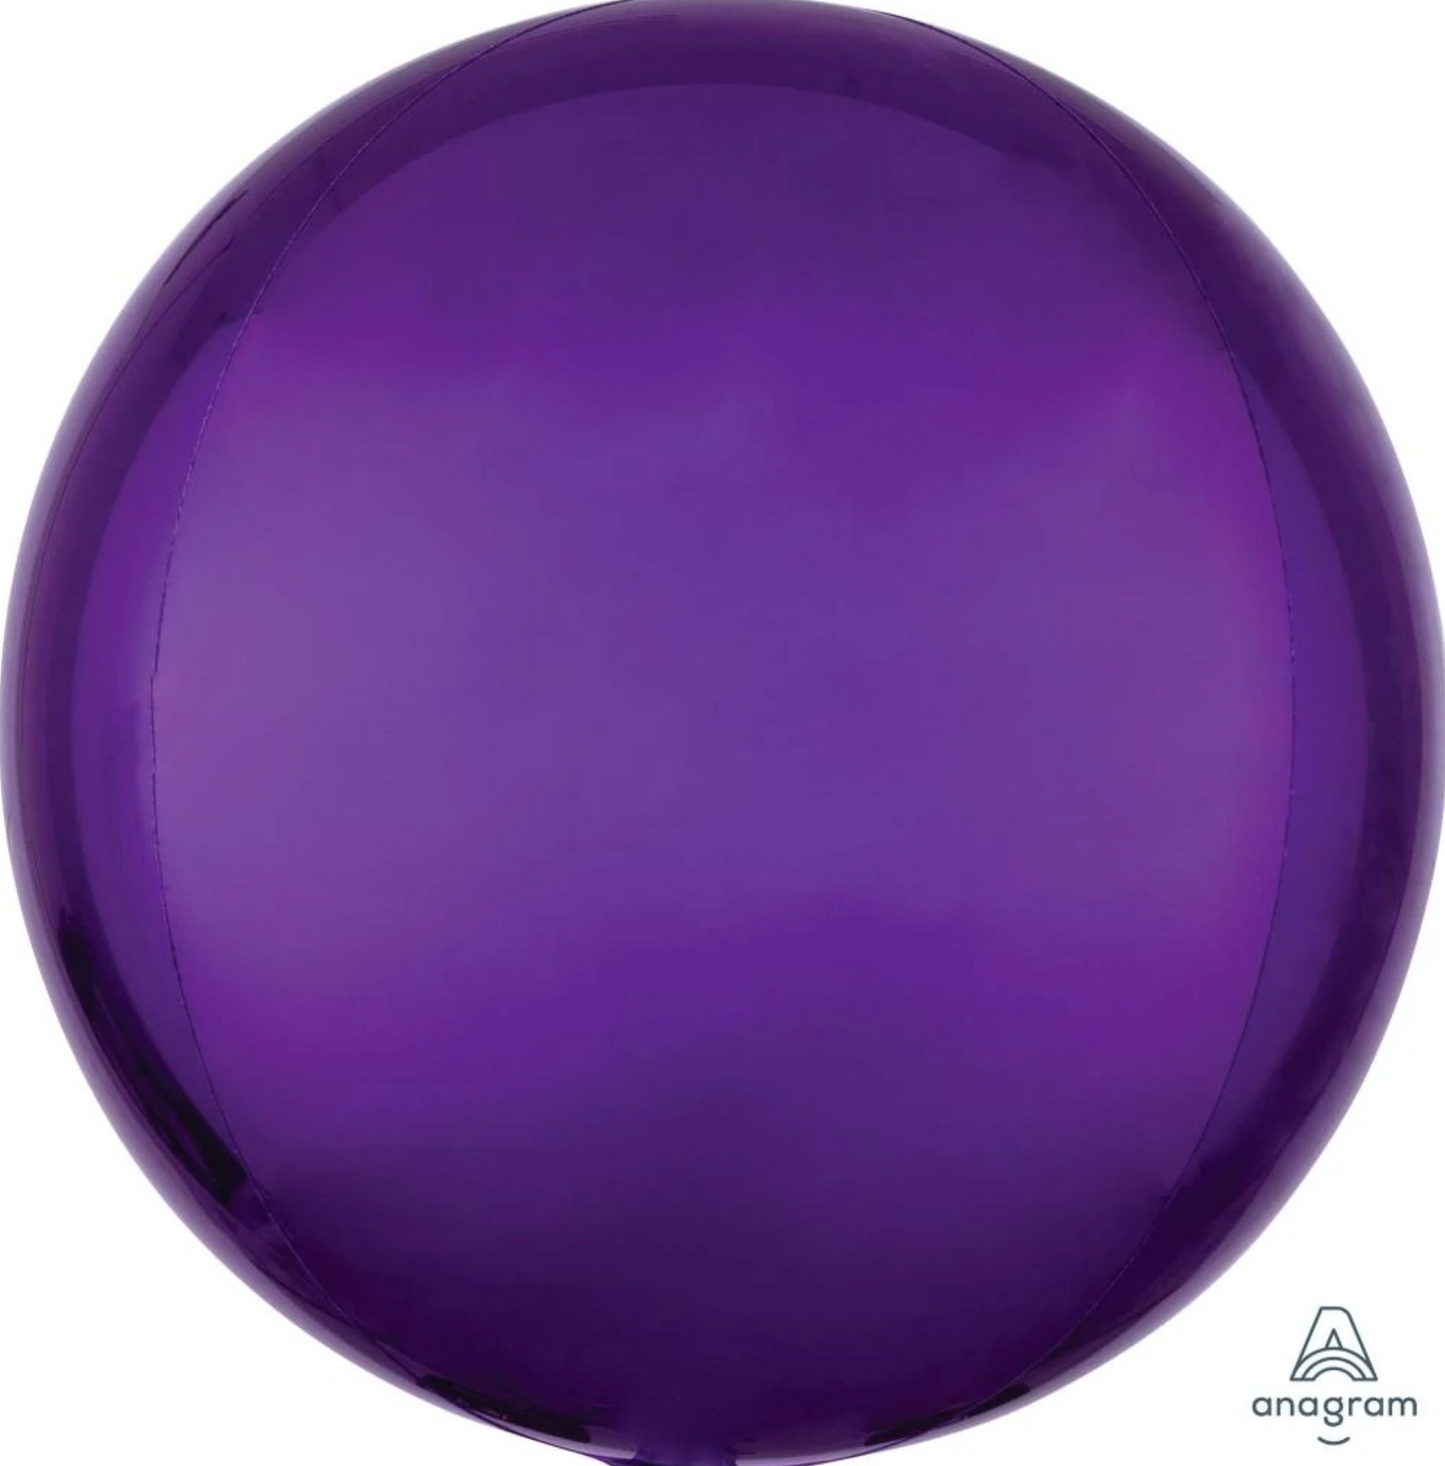 Purple Orbz Balloon